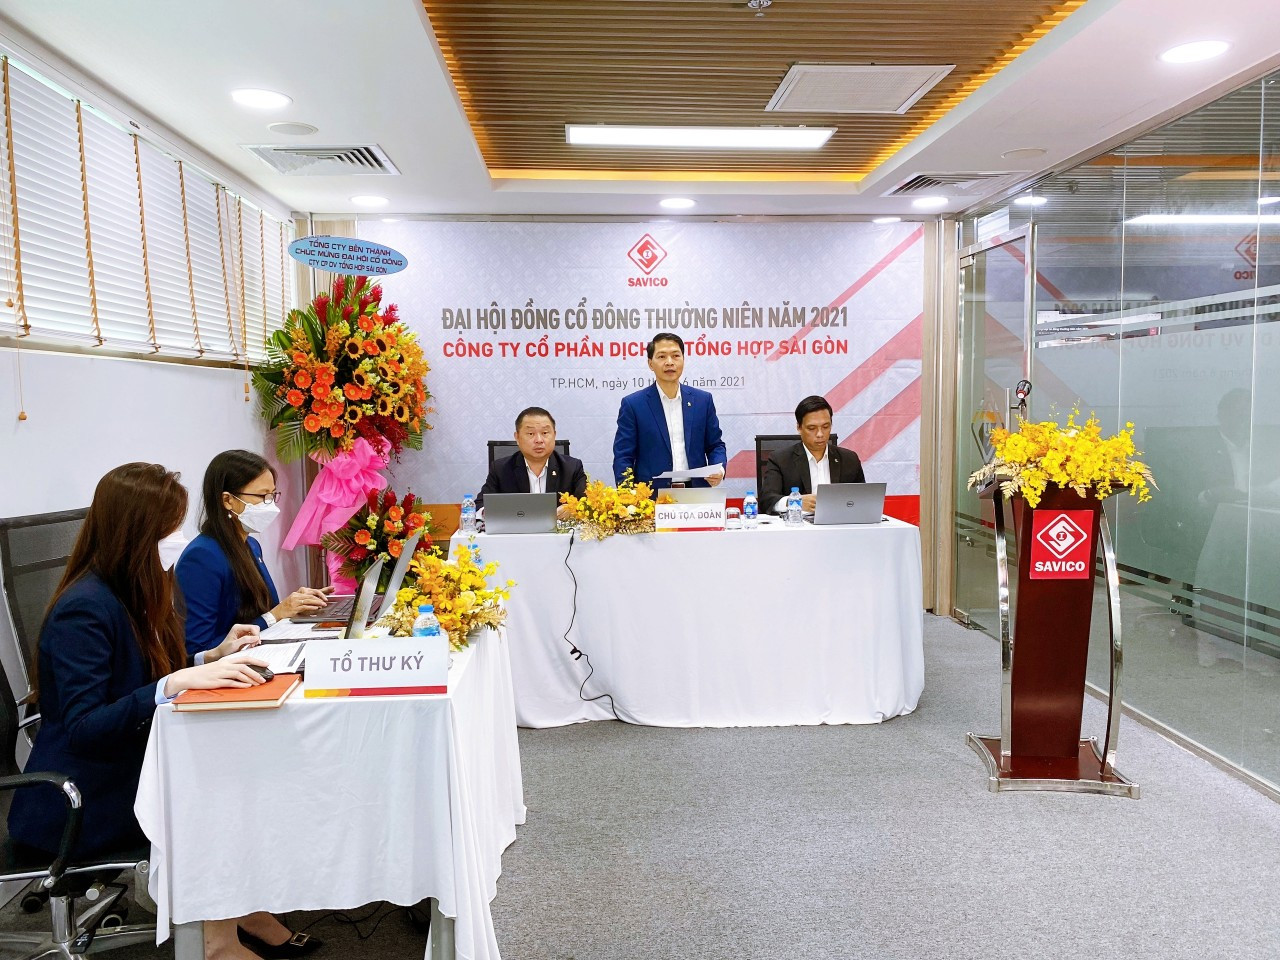 Ông Mai Việt Hà, (đứng), Chủ tịch Hội đồng Quản trị Công ty Cổ phần Dịch vụ Tổng hợp Sài Gòn – Savico phát biểu tại ĐHCĐ hôm 10 tháng 6. 